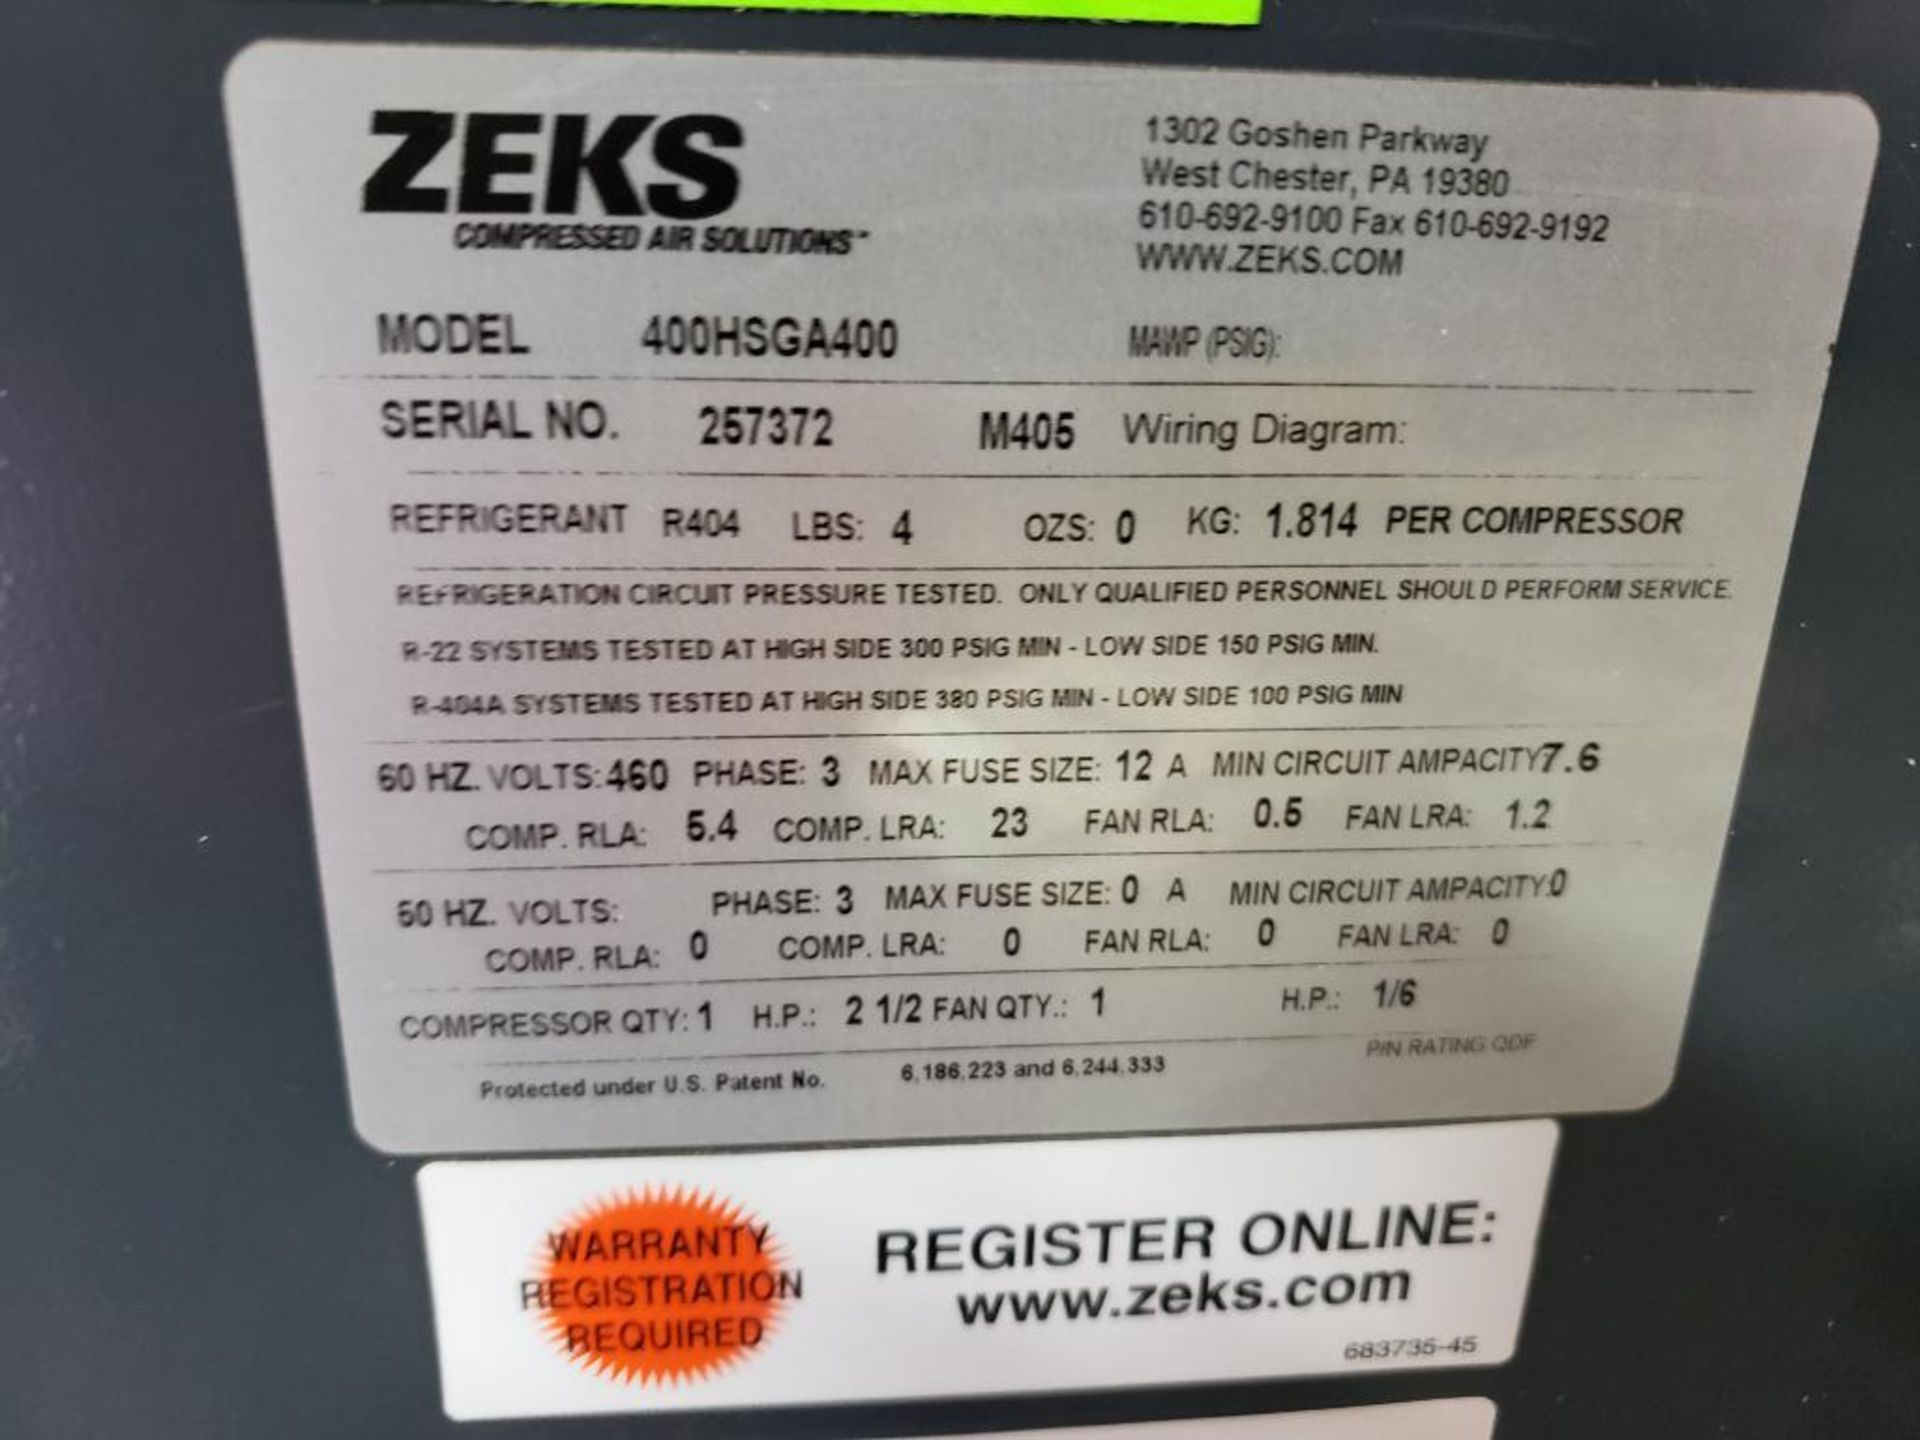 Zeks compressed air dryer. Model 400HSGA400. 3 phase 460v. - Image 5 of 10